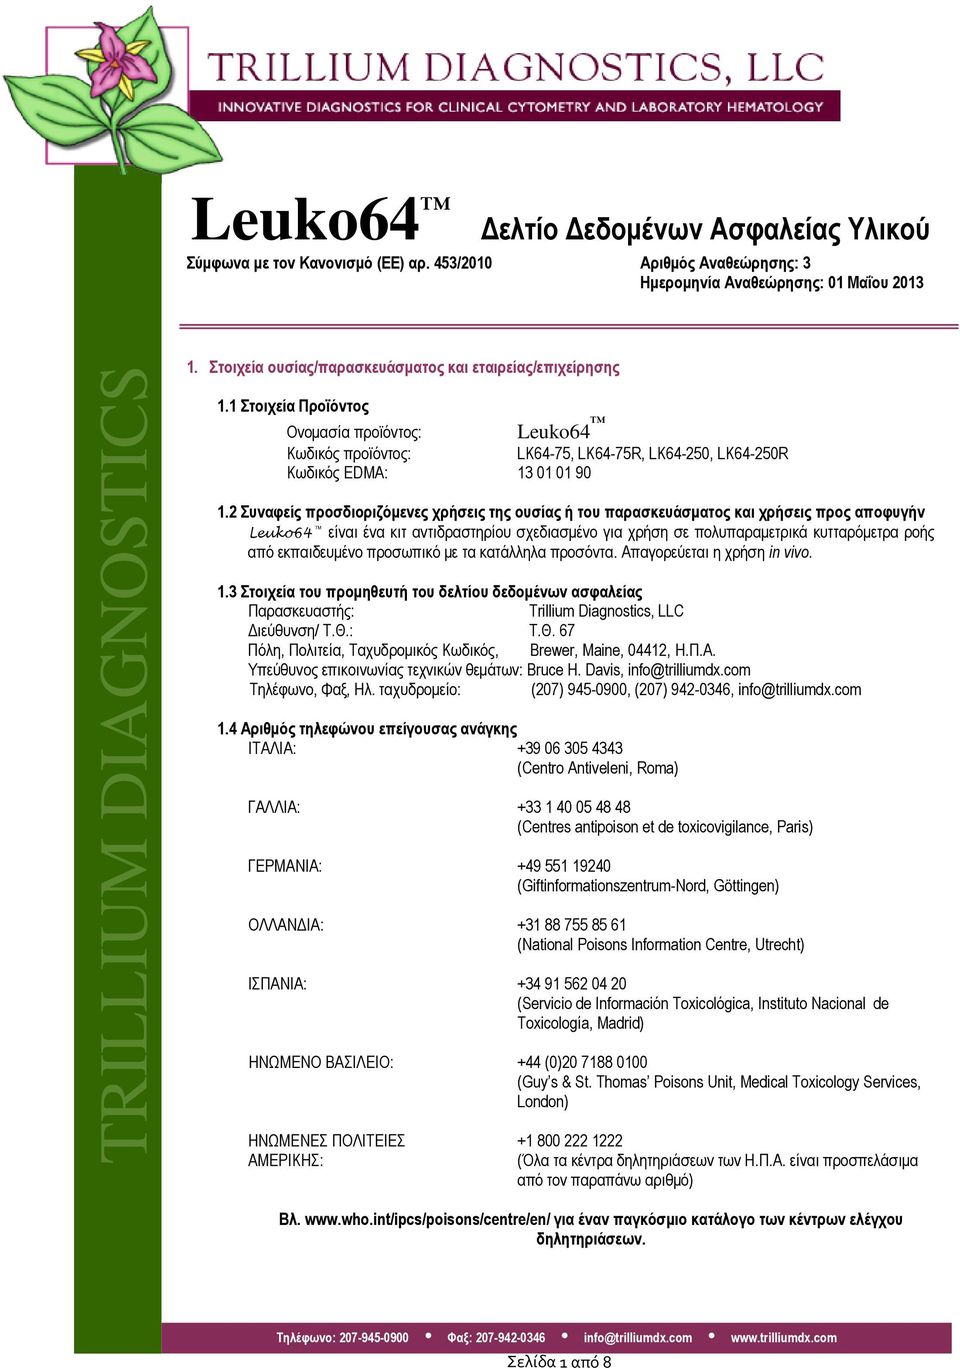 2 Συναφείς προσδιοριζόμενες χρήσεις της ουσίας ή του παρασκευάσματος και χρήσεις προς αποφυγήν Leuko64 είναι ένα κιτ αντιδραστηρίου σχεδιασμένο για χρήση σε πολυπαραμετρικά κυτταρόμετρα ροής από